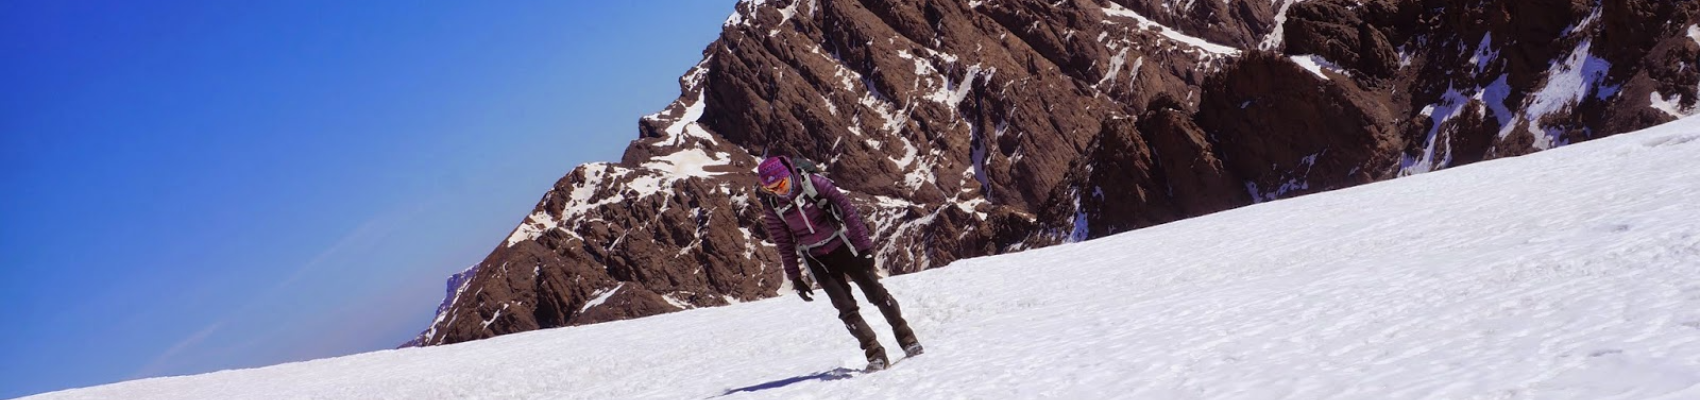 Ski touring in Morocco Mountains - 8 Days